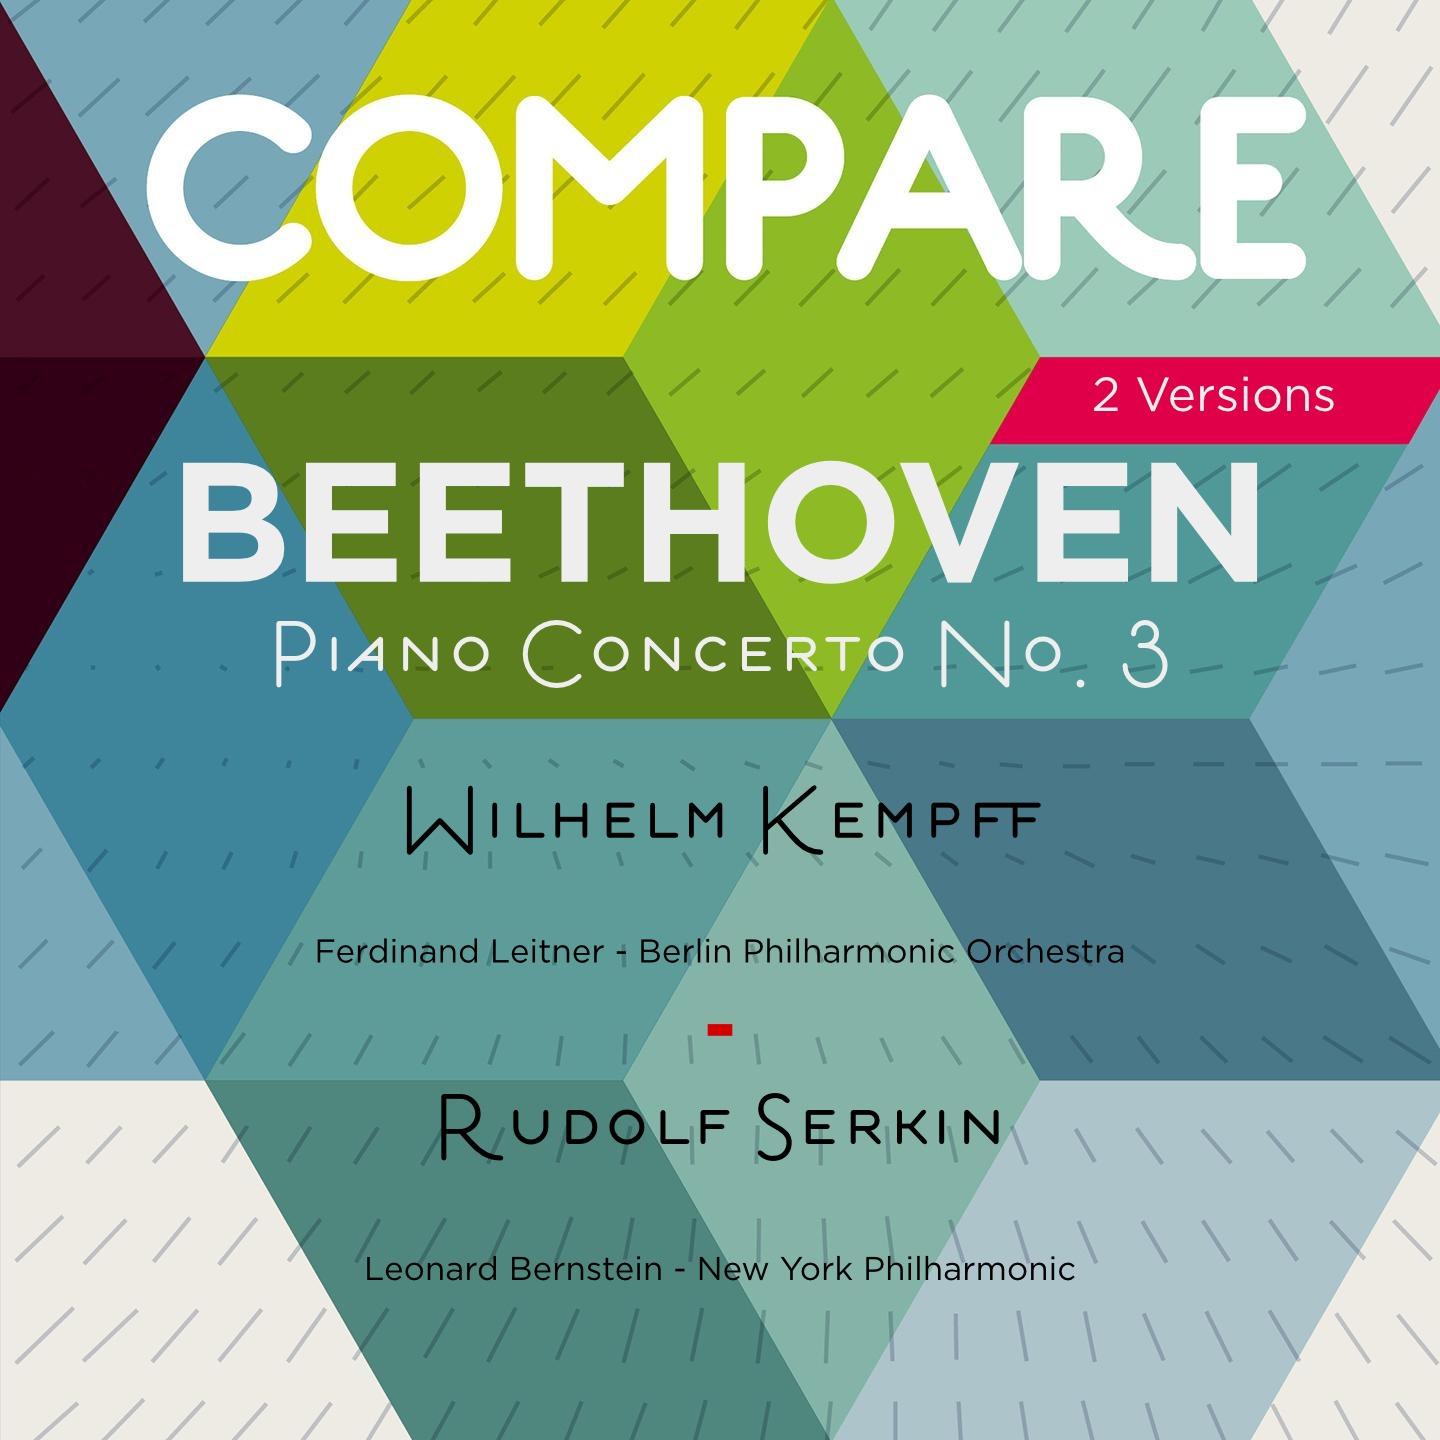 Beethoven: Piano Concerto No. 3, Wilhelm Kempff vs. Rudolf Serkin (Compare 2 Versions)